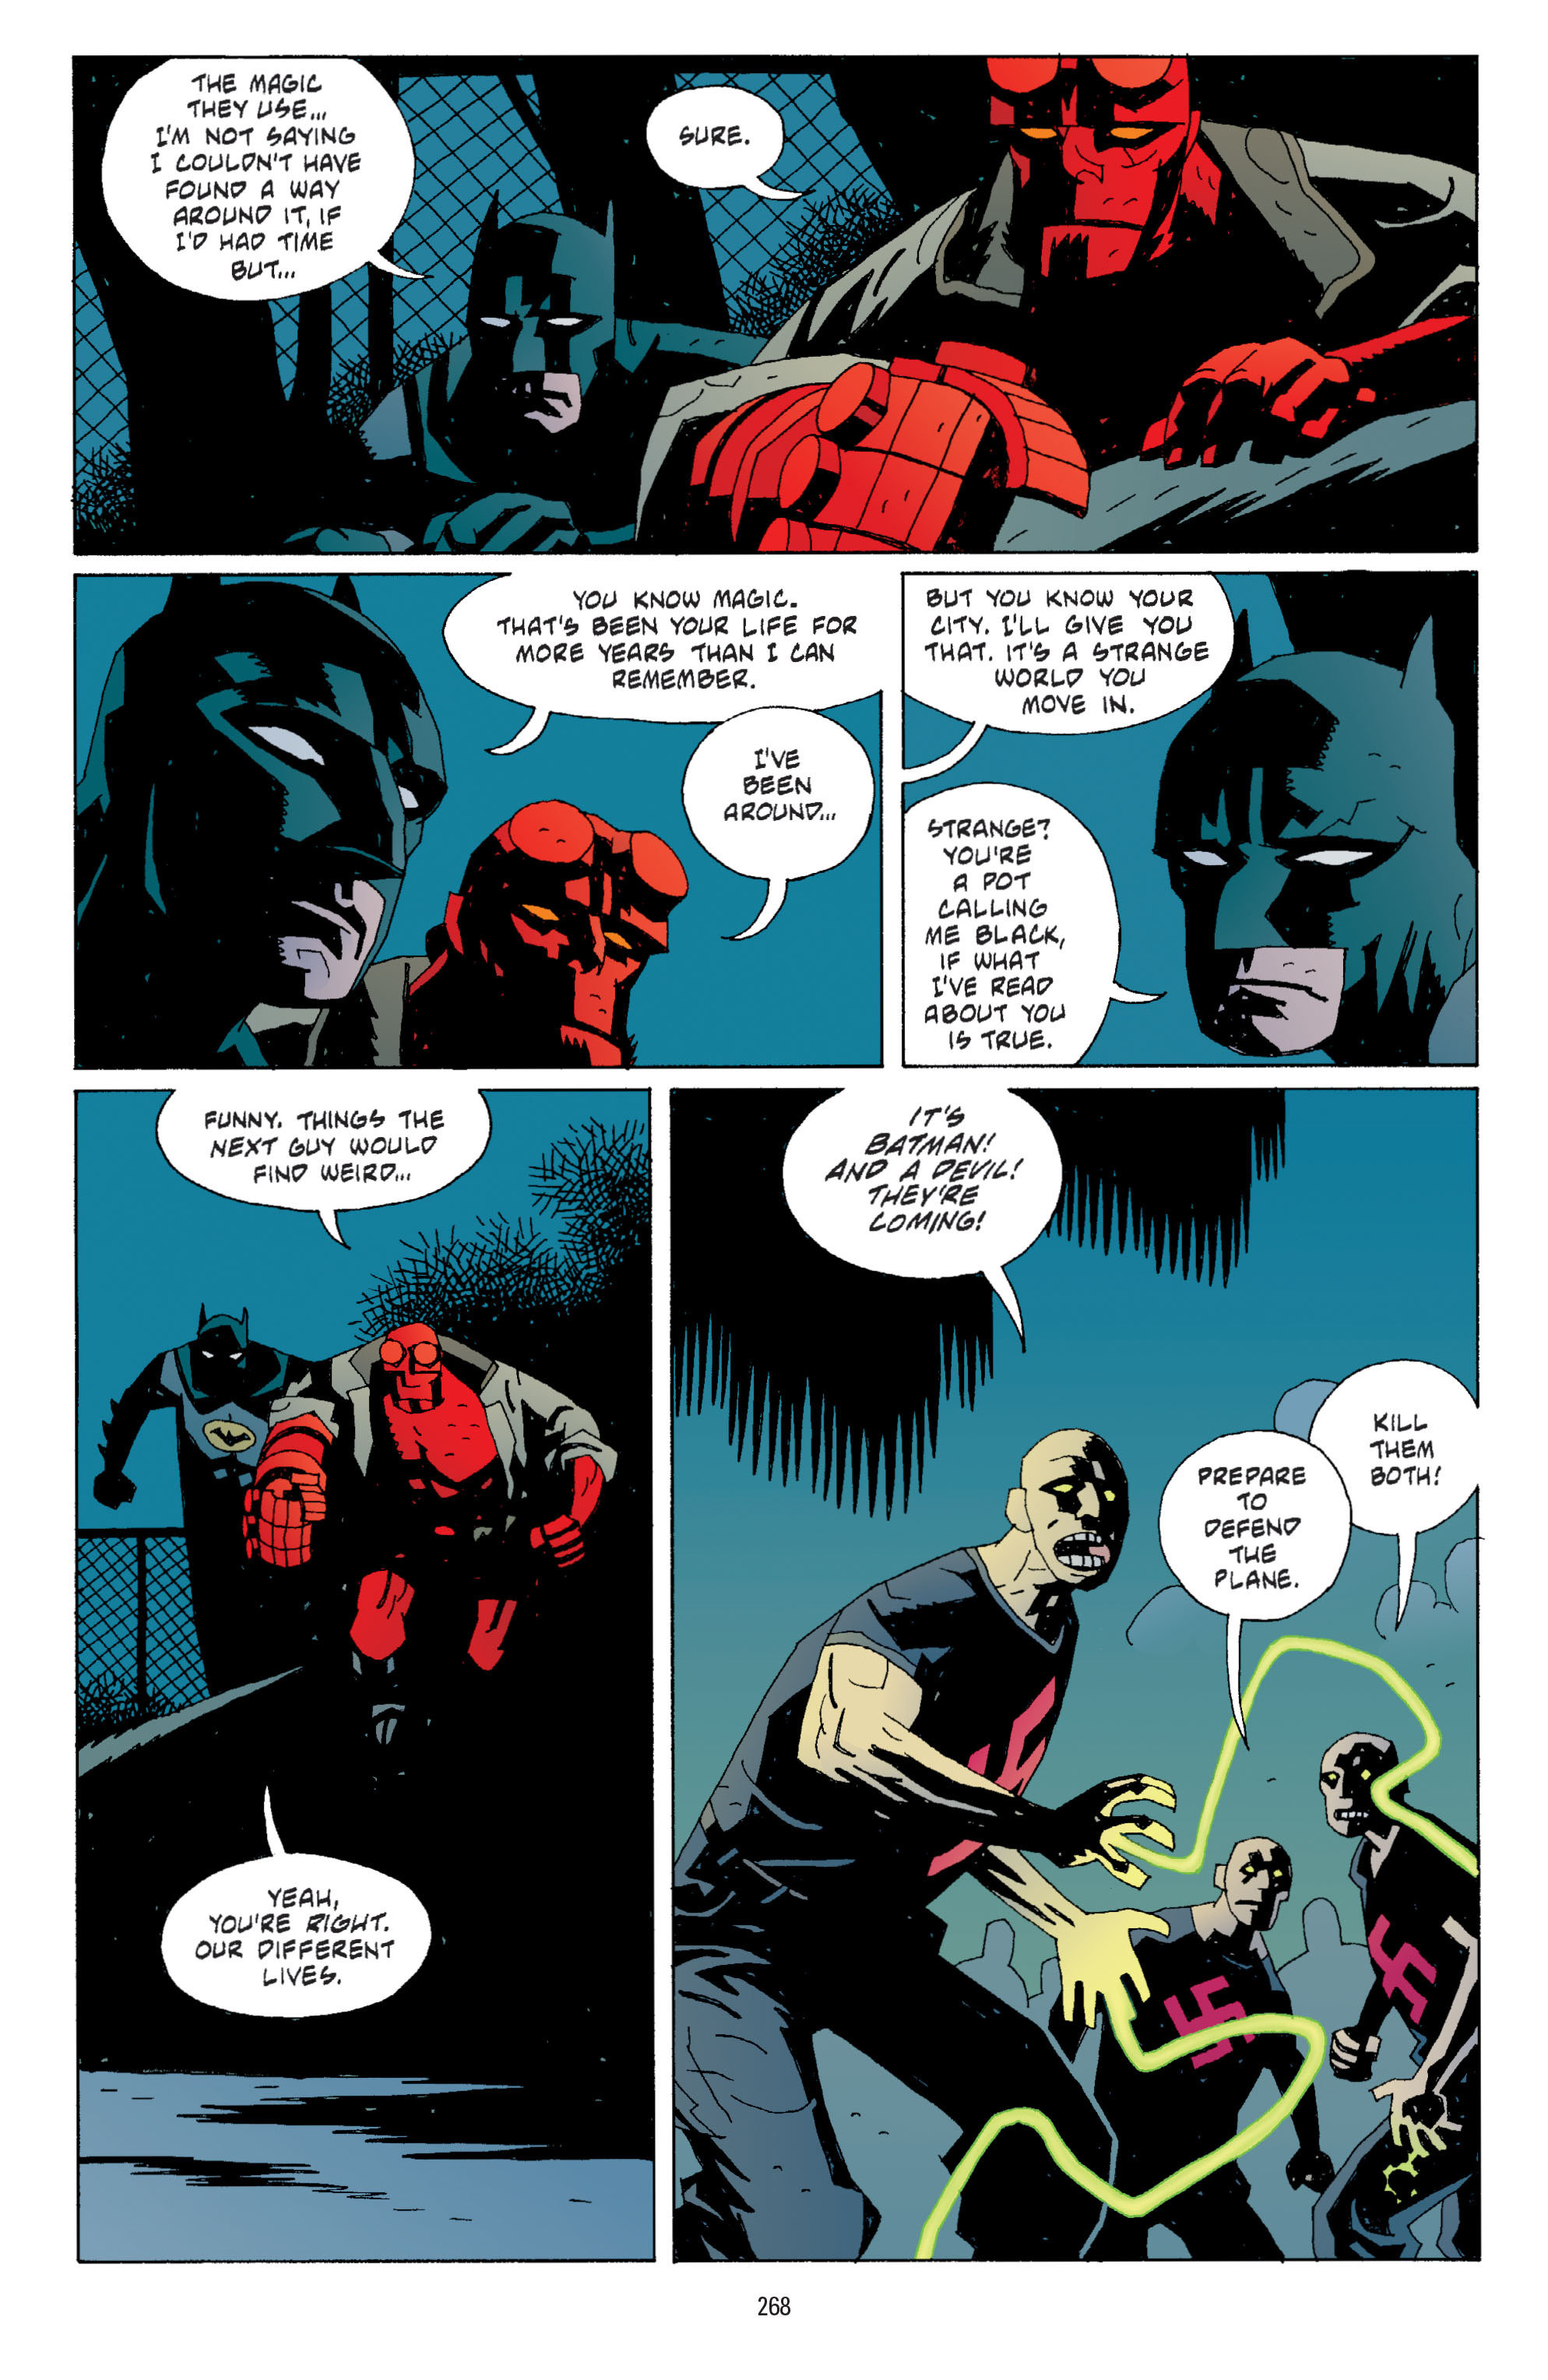 DC Comics/Dark Horse Comics: Justice League Full #1 - English 259